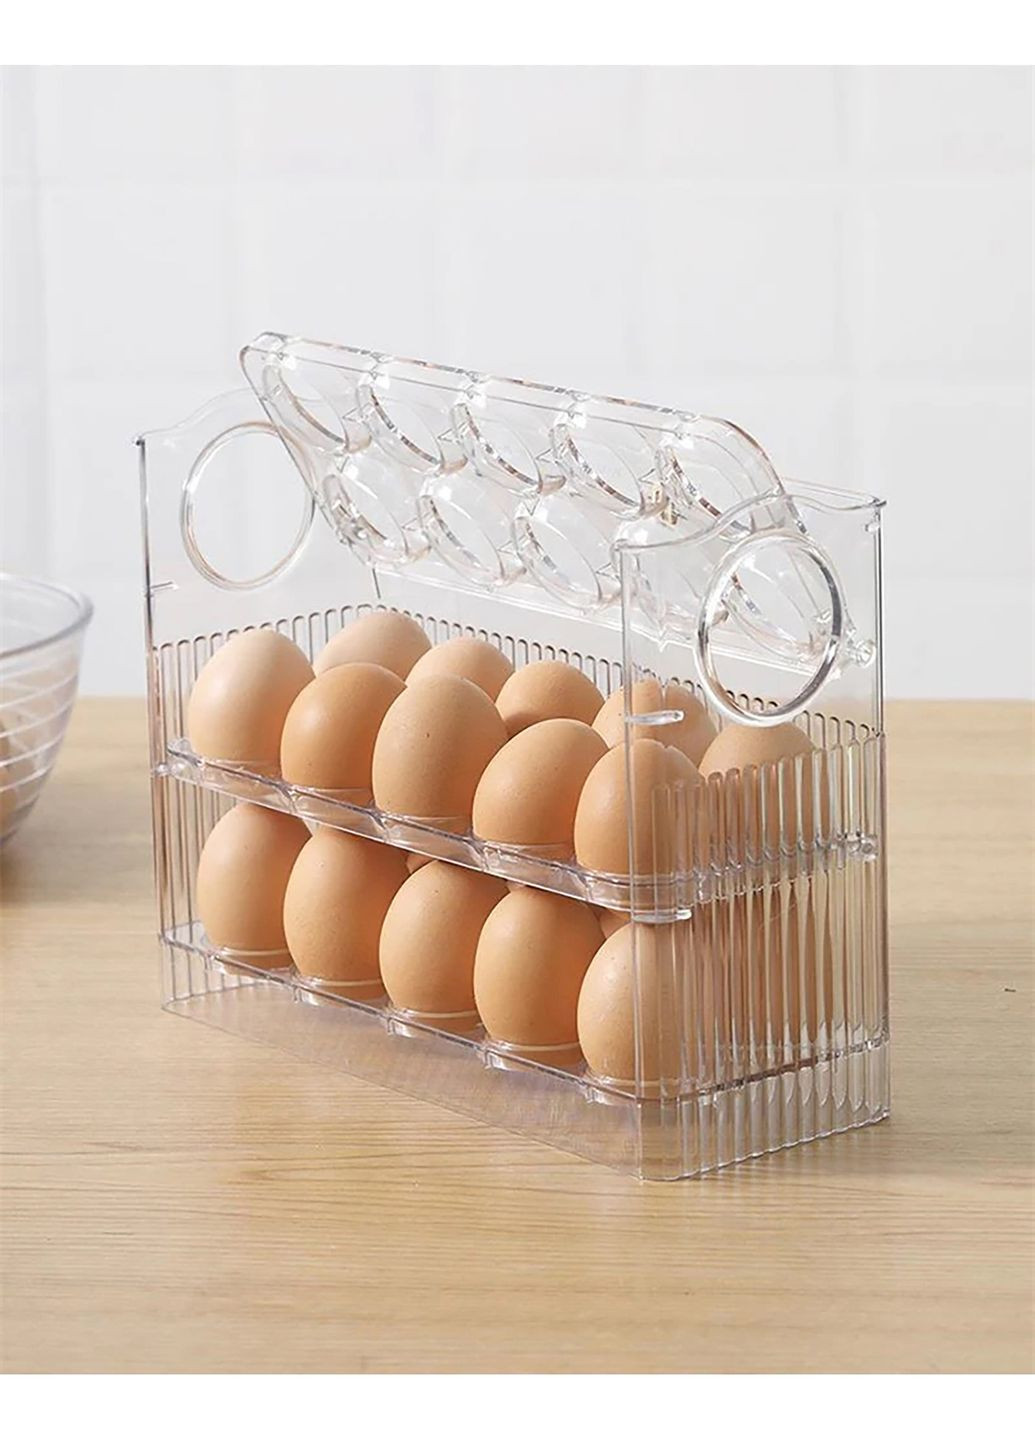 Контейнер для хранения яиц, органайзер для яиц в холодильник, лоток для яиц 30 штук Kitchen Master (277925407)